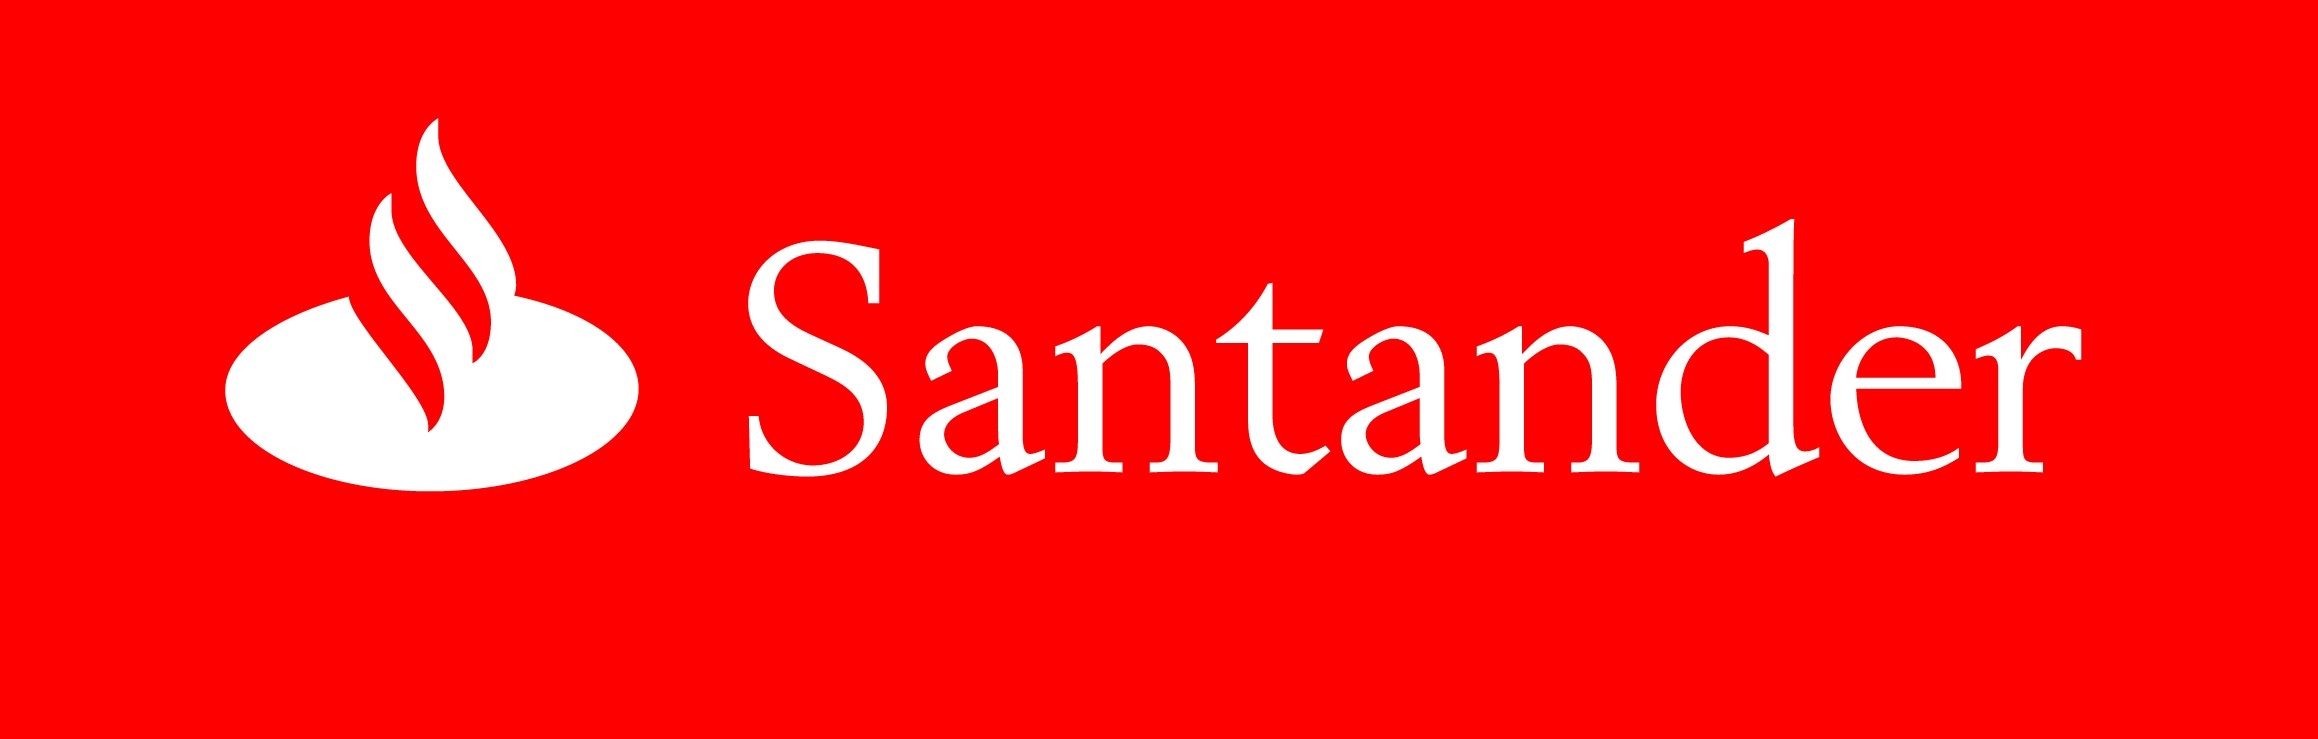 Pregunta por nuestras promociones a meses sin intereses con Tarjetas de Crédito Santander.